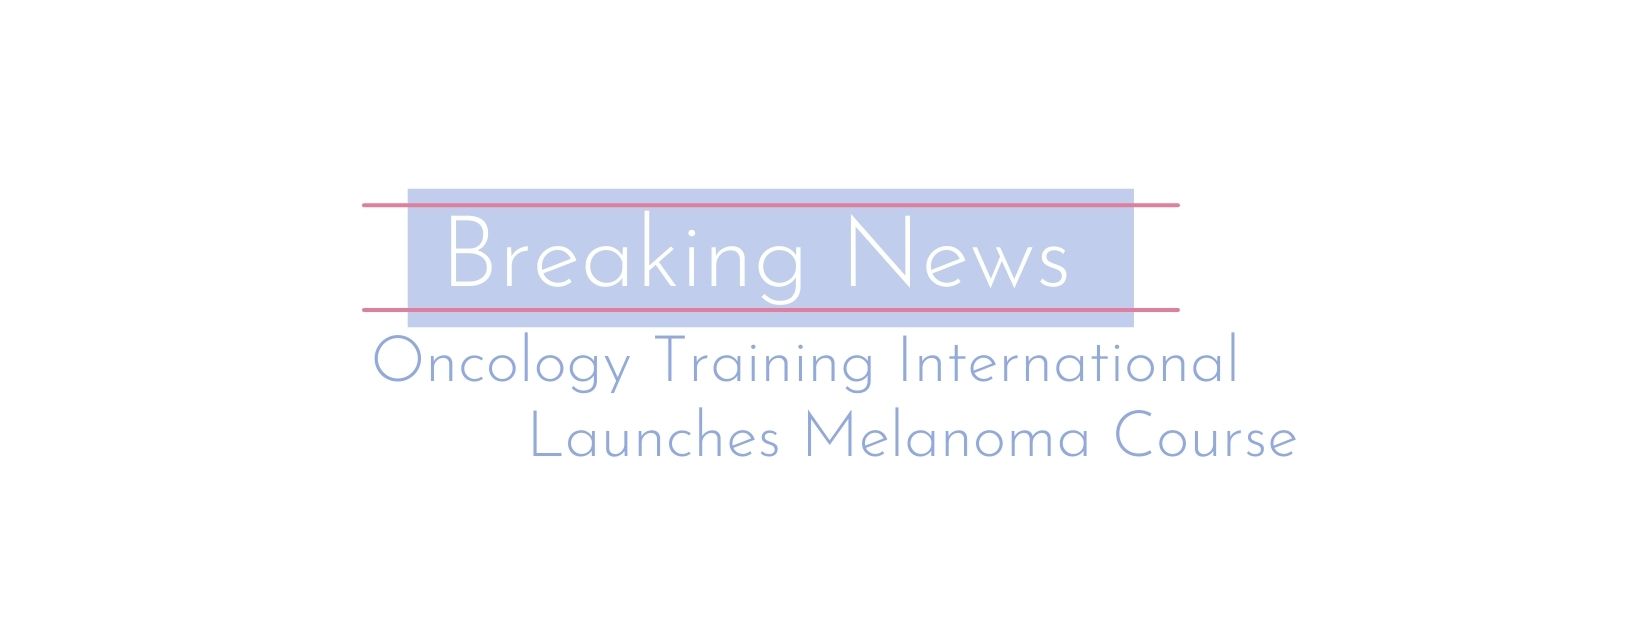 Oncology Training International Launches Melanoma Course